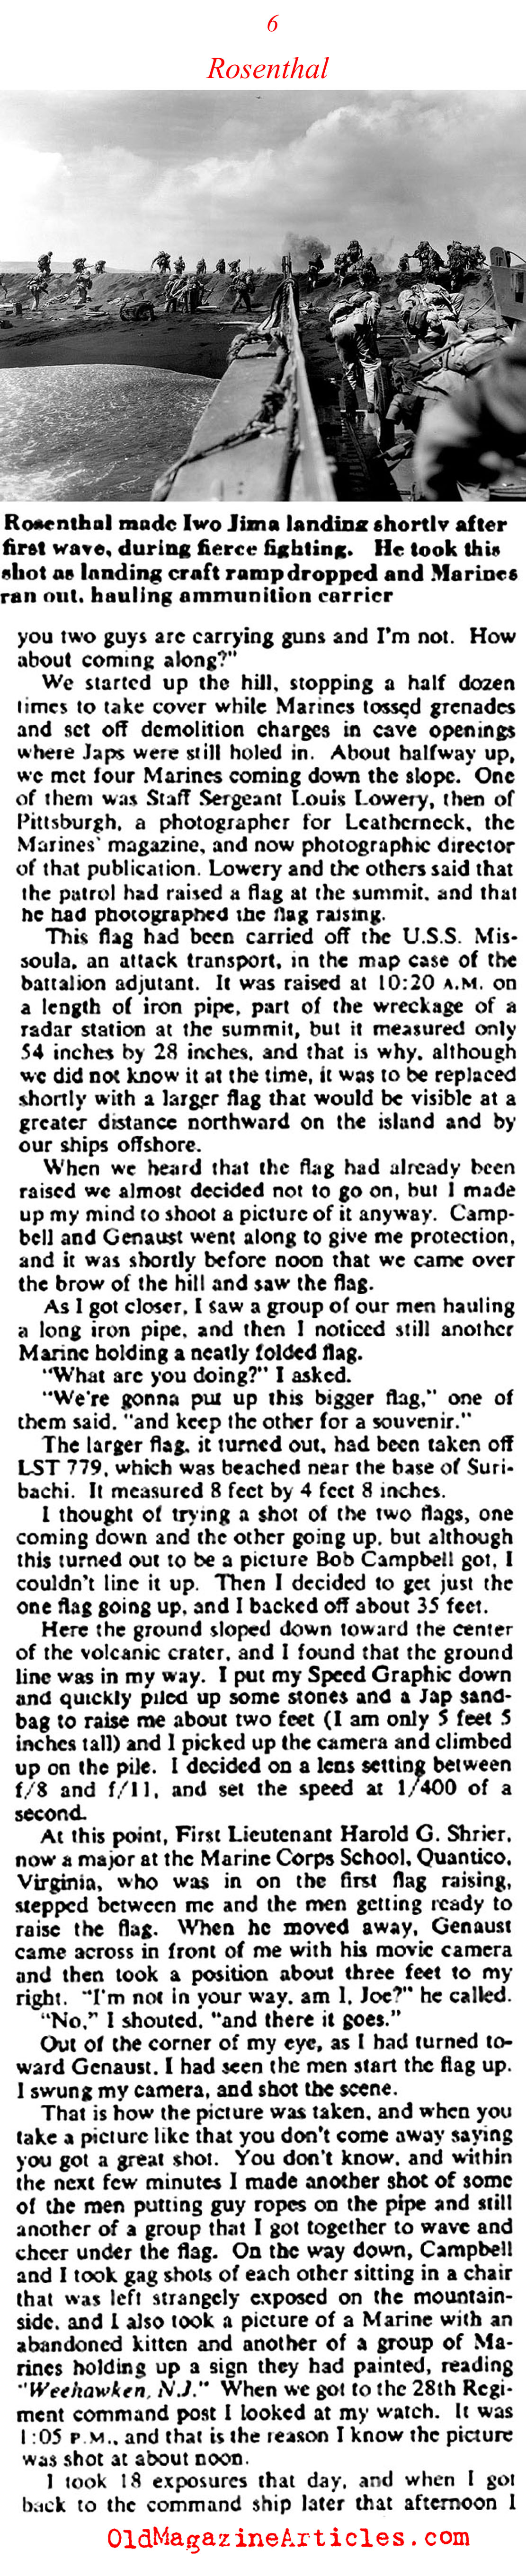 Joe Rosenthal on Iwo Jima (Collier's Magazine, 1955)